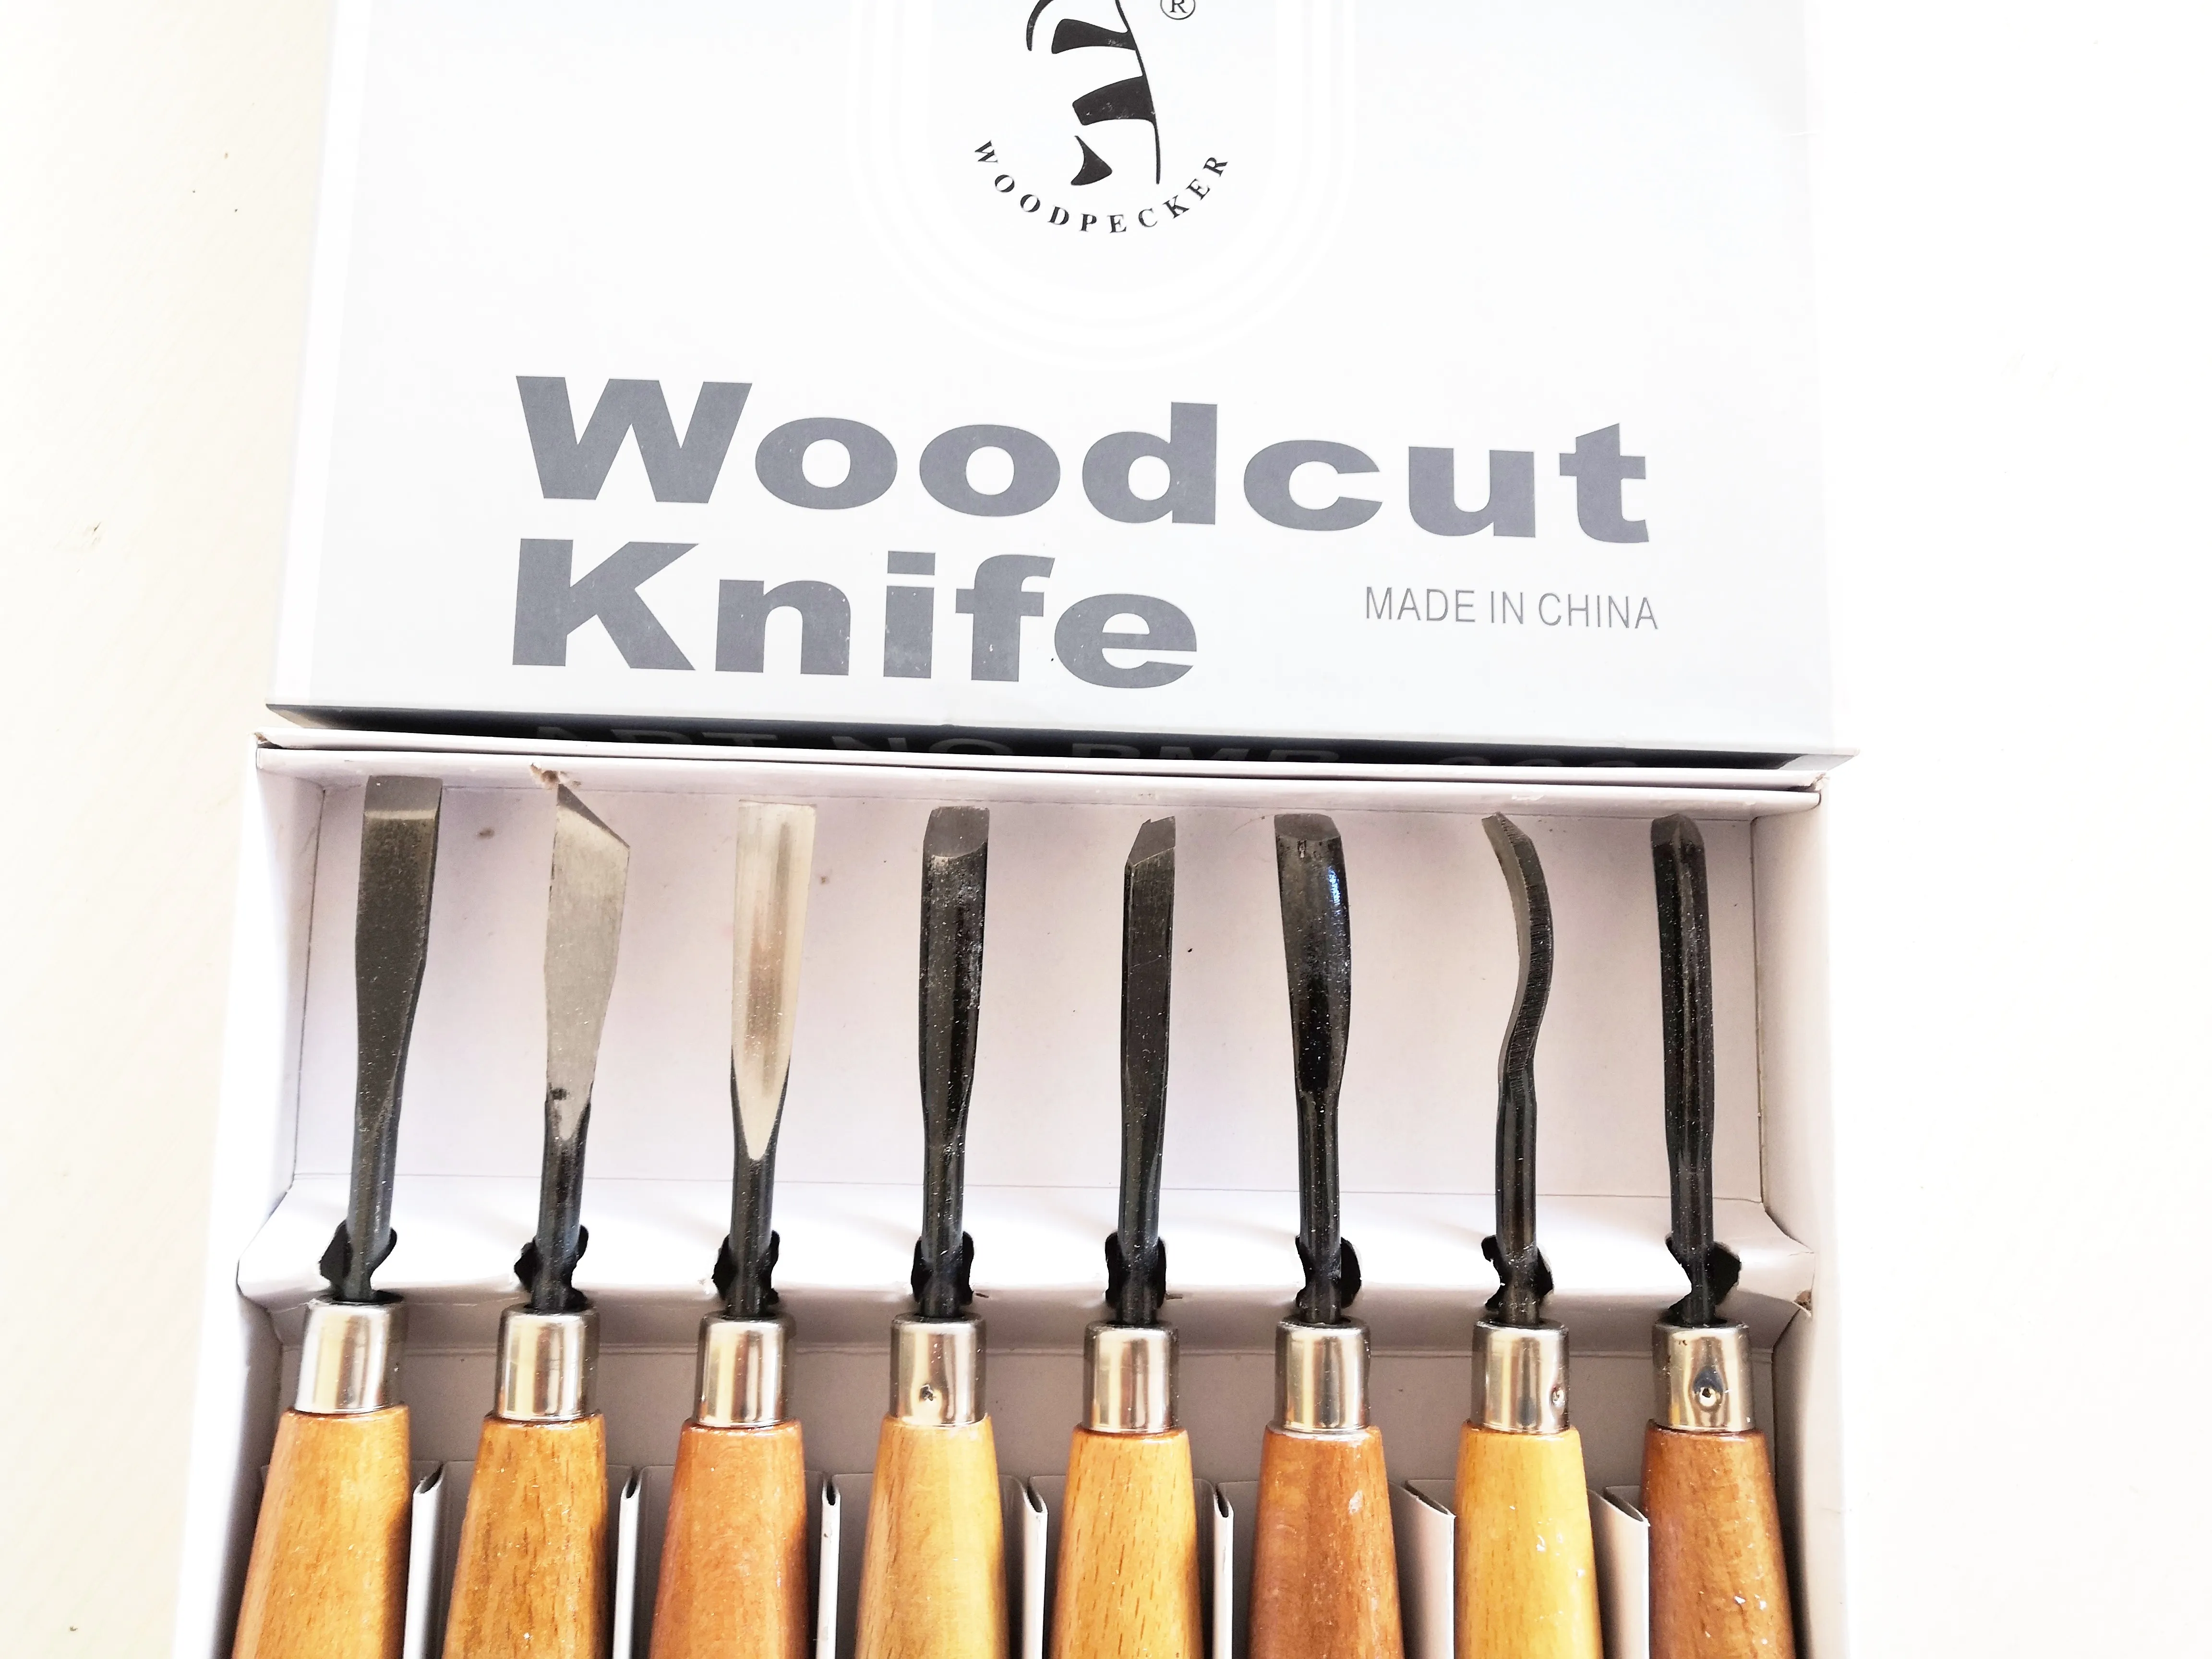 8 шт. набор ножей для резьбы по дереву, плотничьи долота, деревообрабатывающие ножи, инструменты 265J